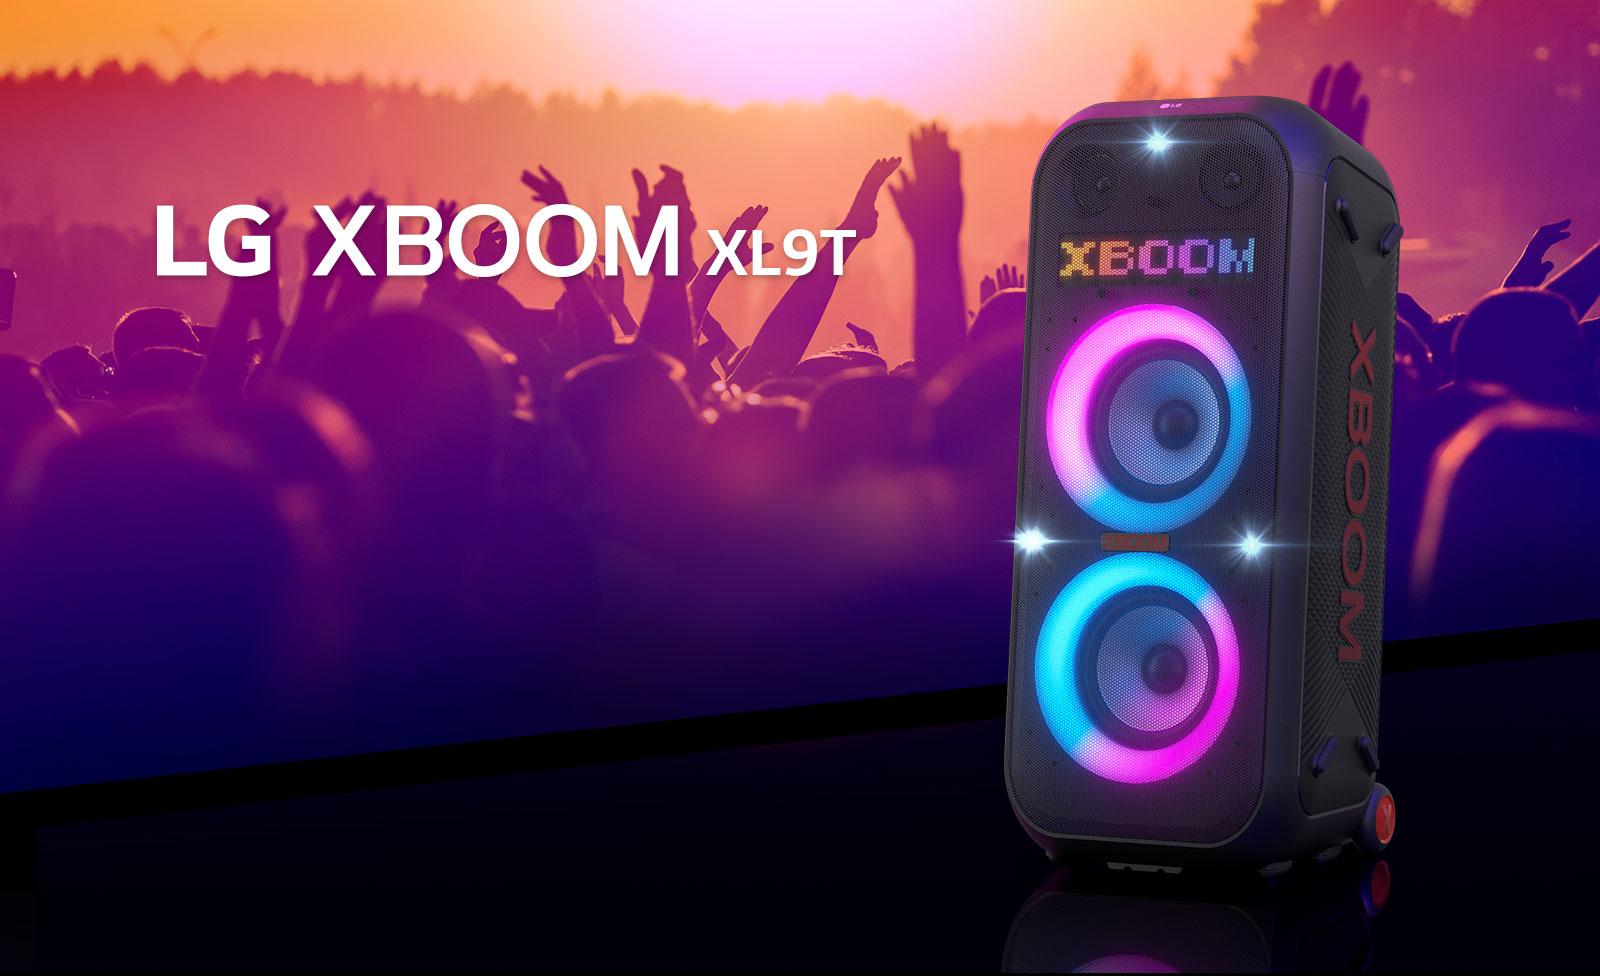 Az LG XBOOM XL9T nézete átlós irányból. A többszínű világítás be van kapcsolva, és a kijelzőn az „XBOOM” szó látható. A hangszóró mögött a bulit élvező emberek alakja látható.